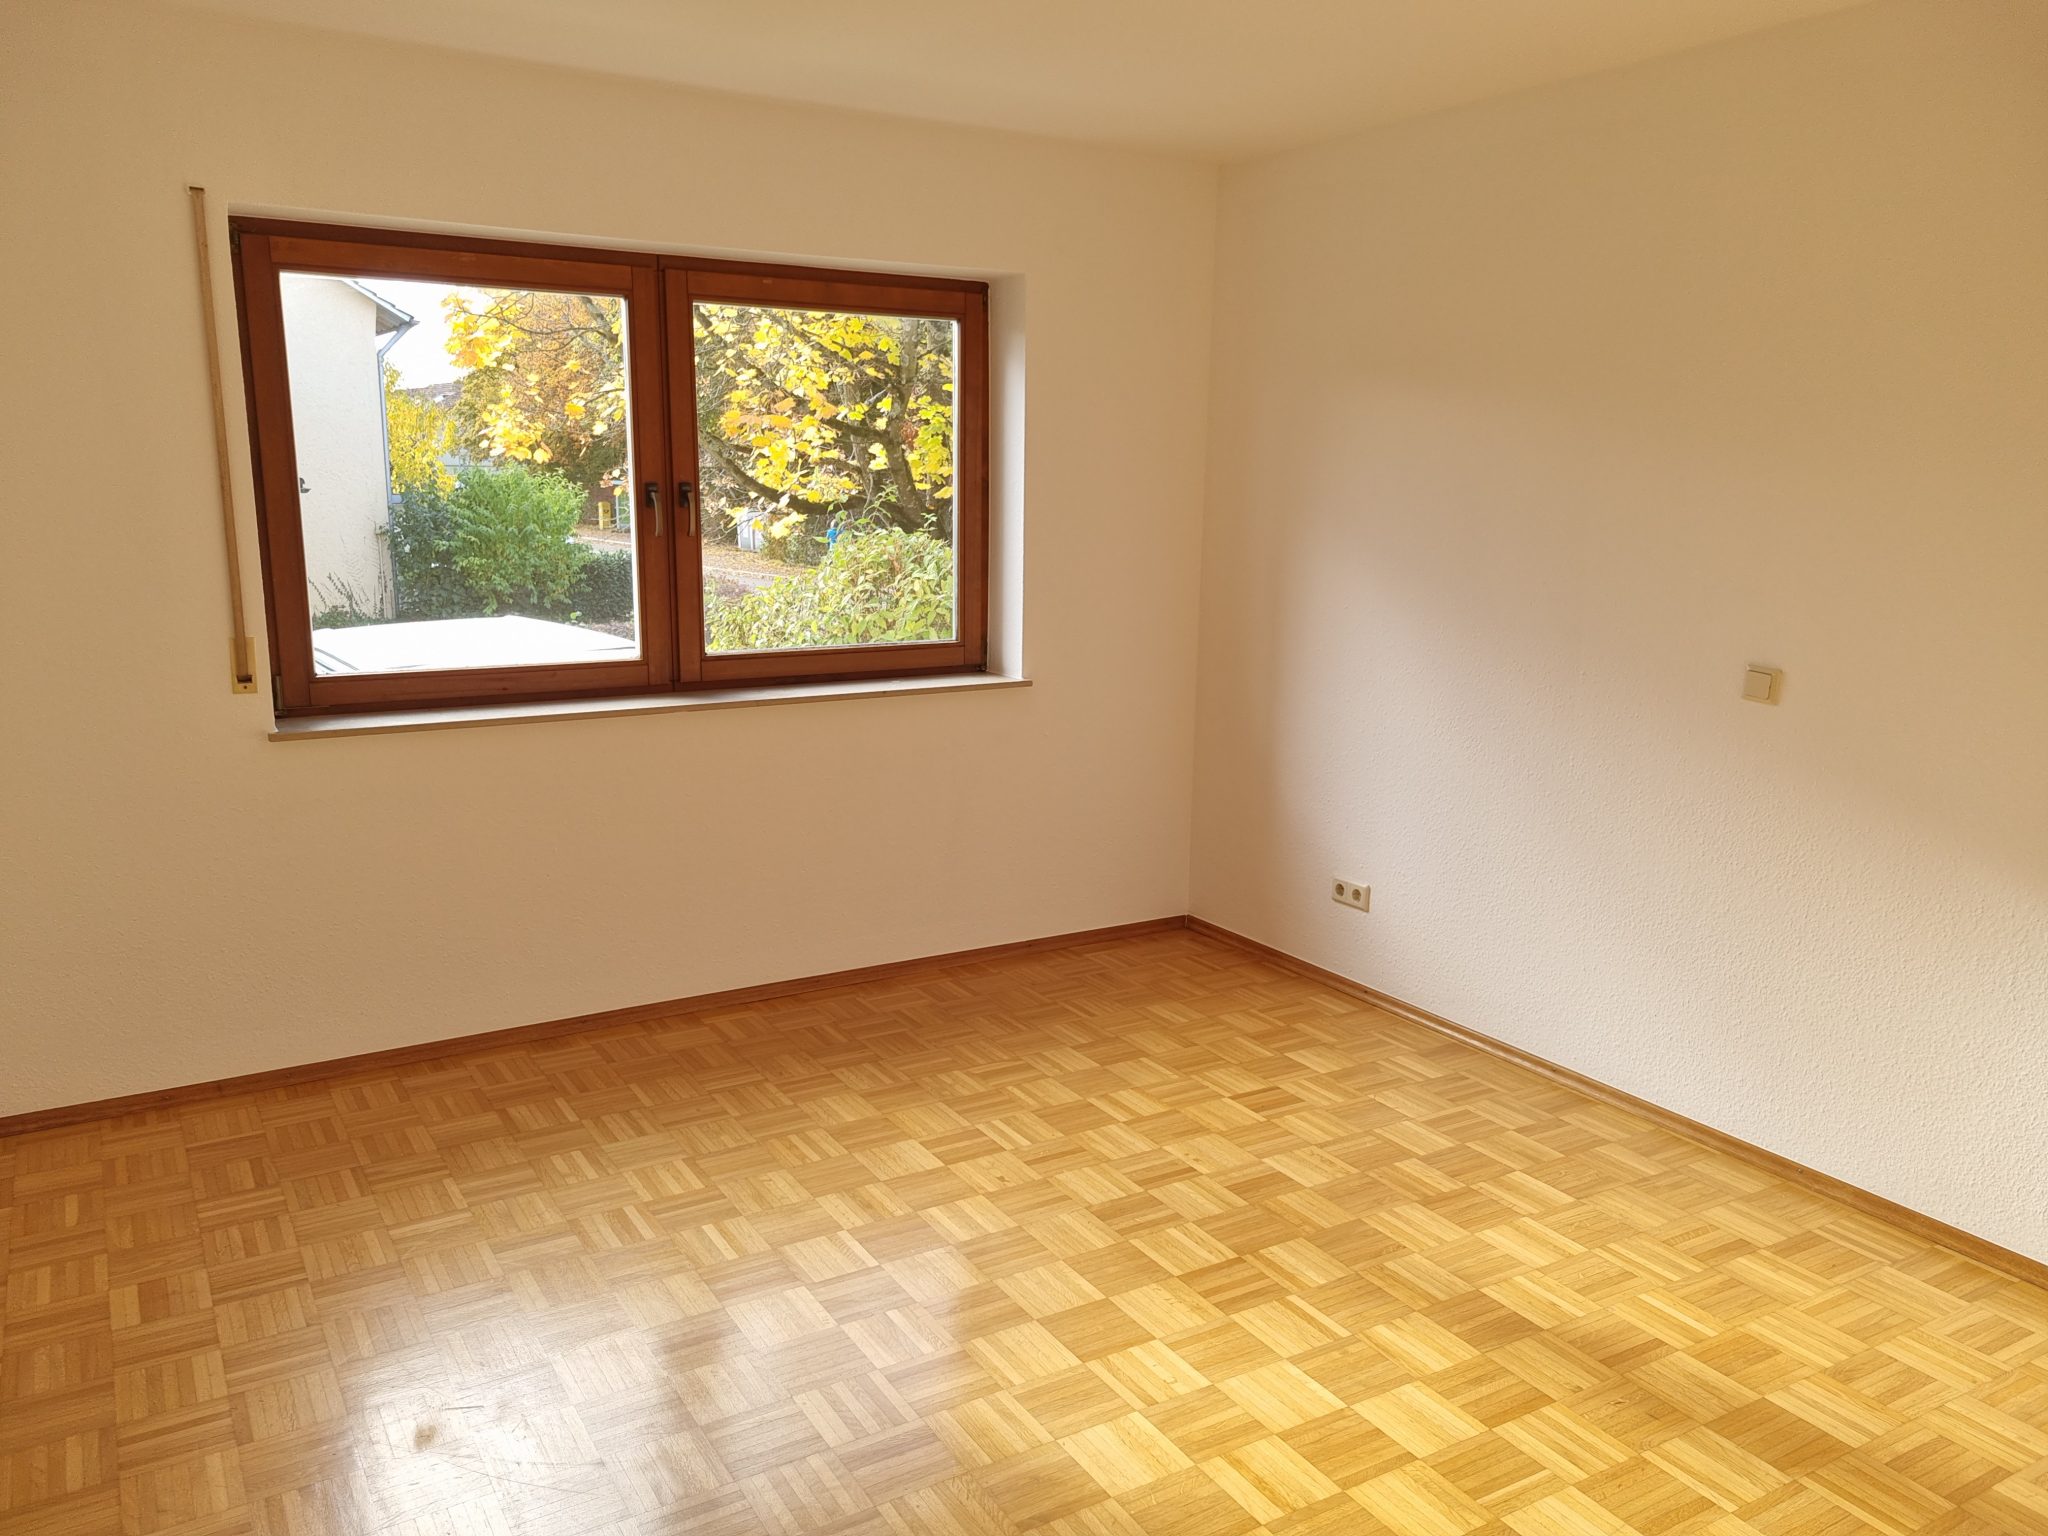 3-Zimmer-Wohnung in zentraler Lage in Überlingen mit TG-Stellplatz